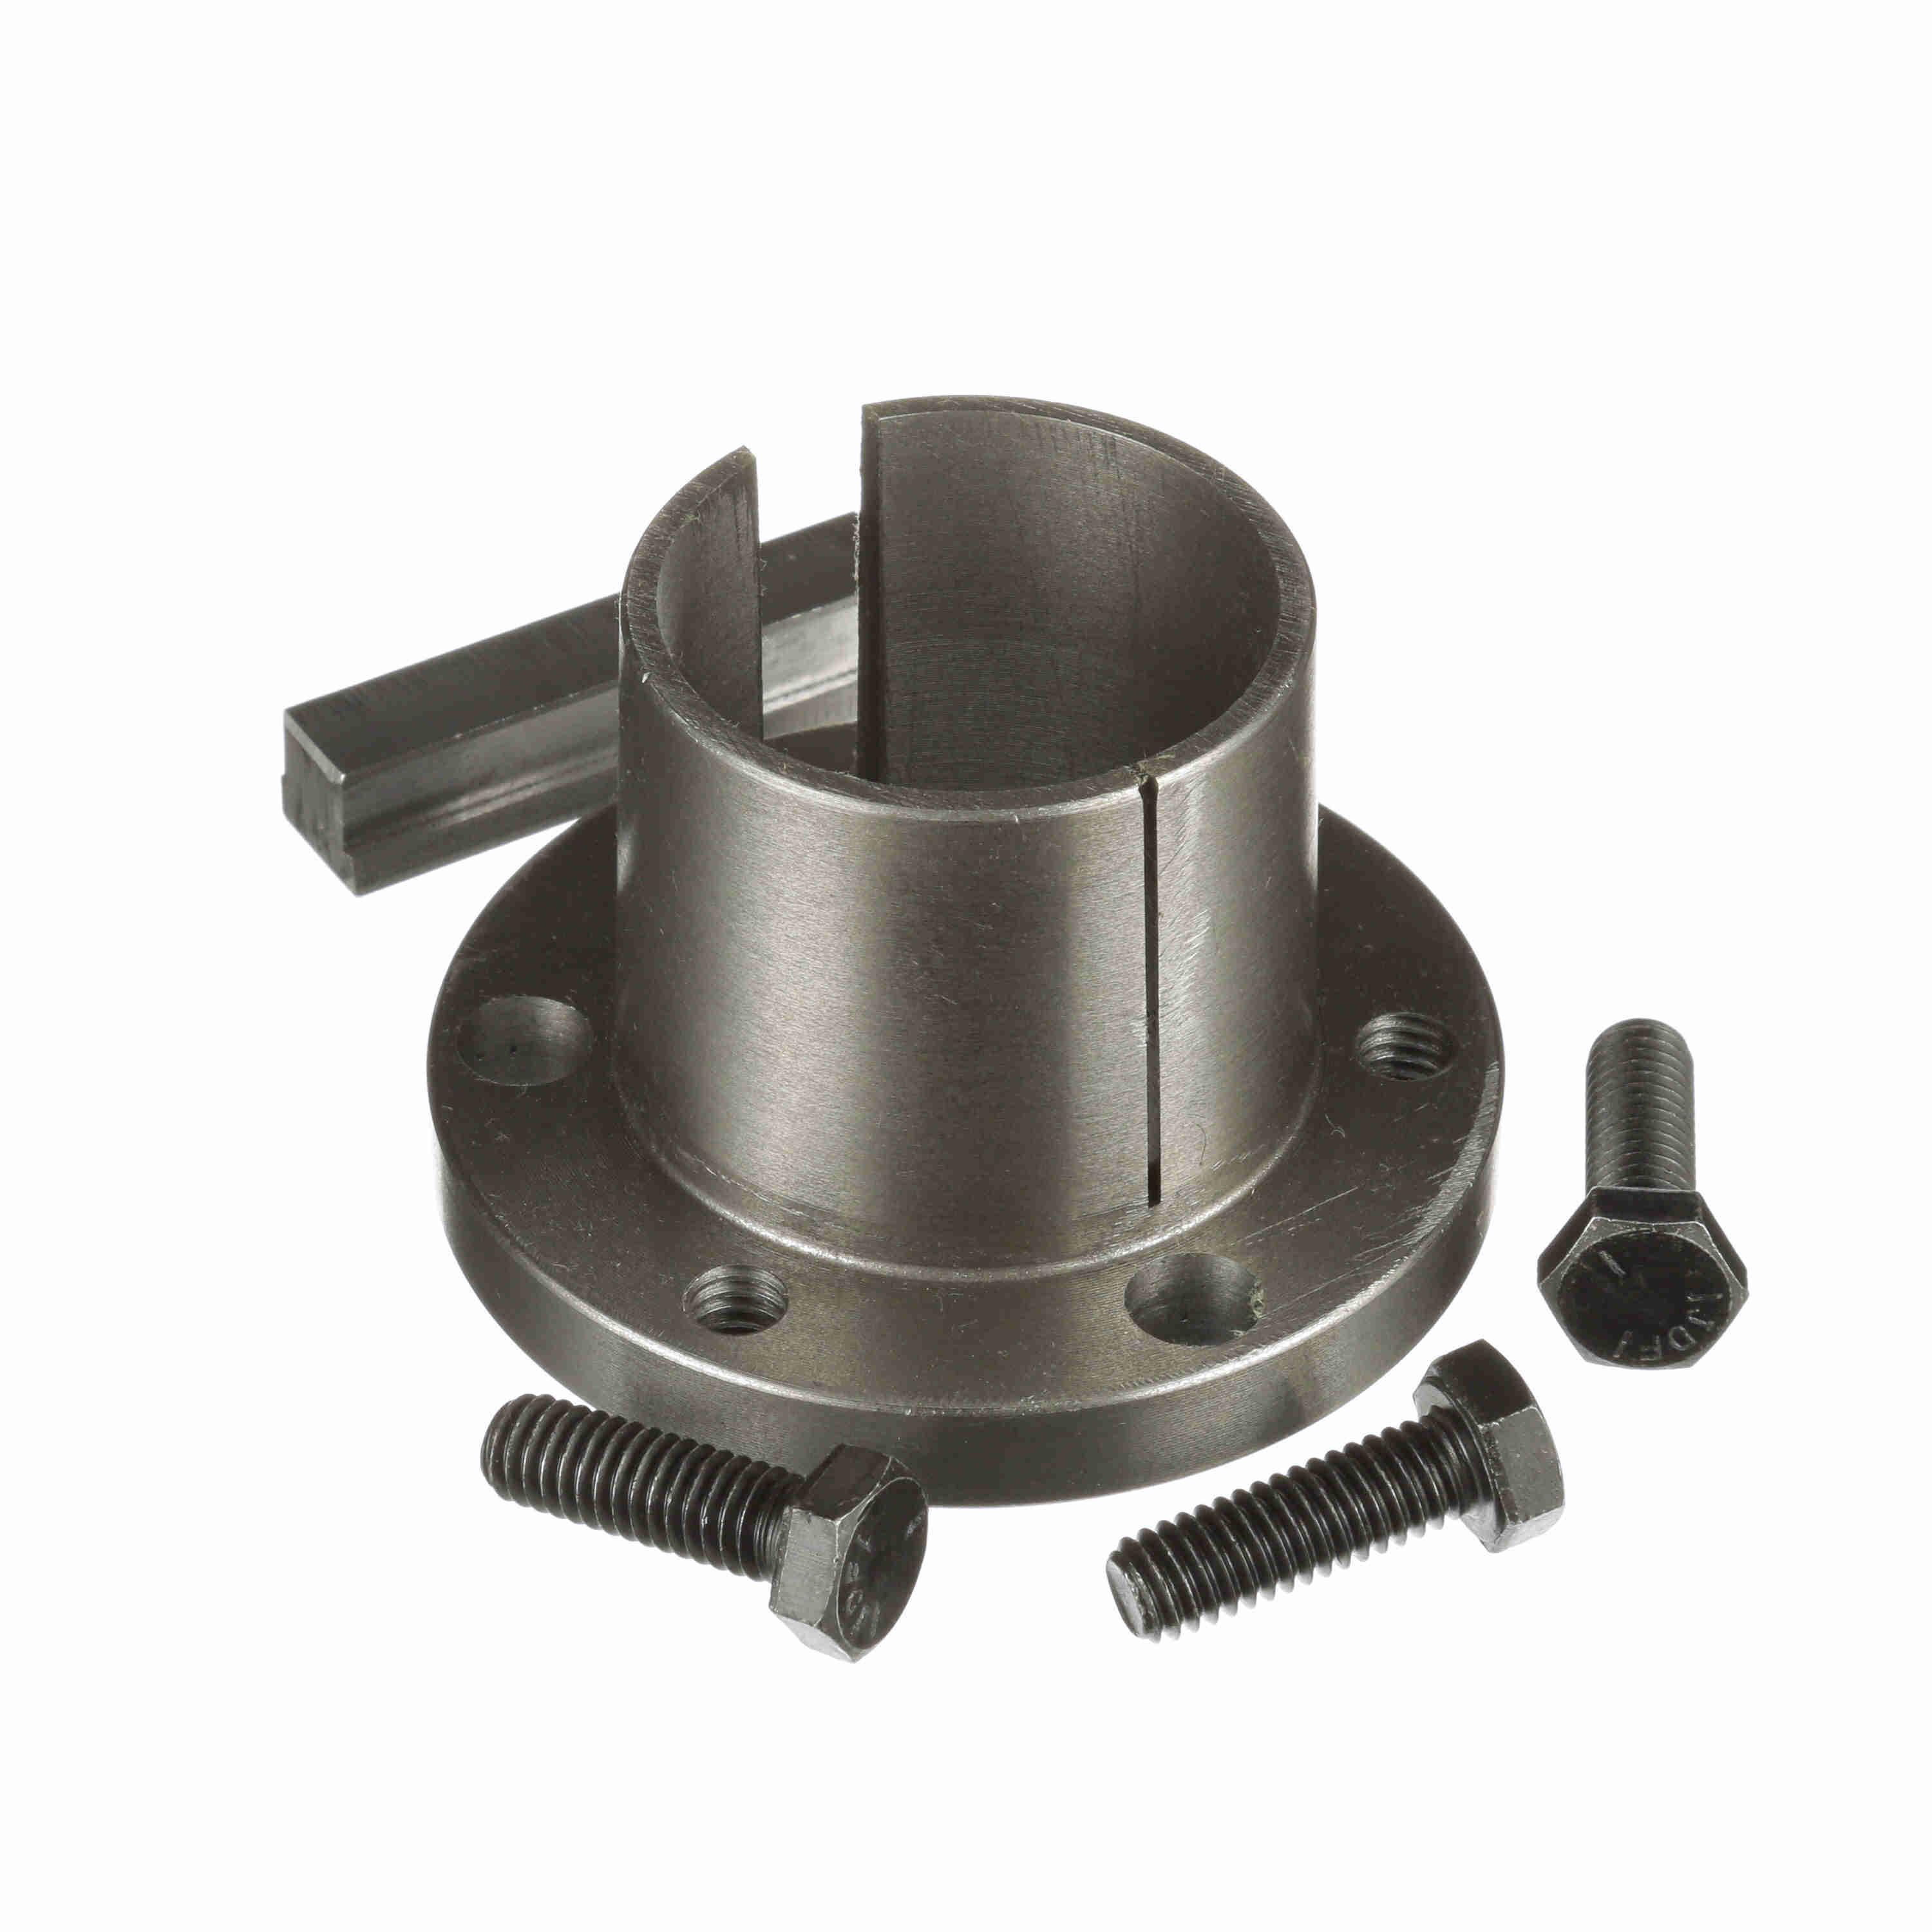 Split konisk bøsning, 42 mm boring, 3 tommer udvendig diameter, P1 split konisk bøsning, sintret stål/ duktilt jern